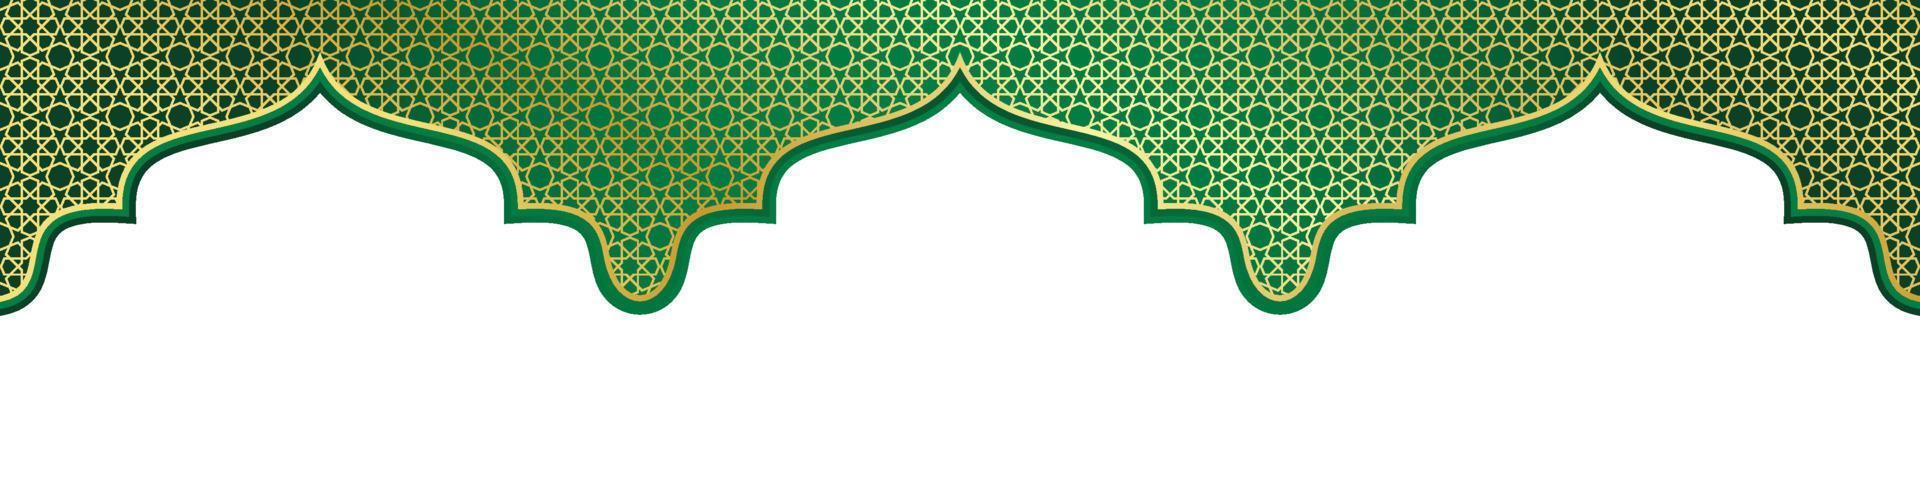 islamisch Ornament Vorlage Header oder Fusszeile zum Hintergrund, Banner, Poster, Startseite Design, Sozial Medien füttern, Geschichten. Ramadan kareem und eid Mubarak 2023 Konzept vektor